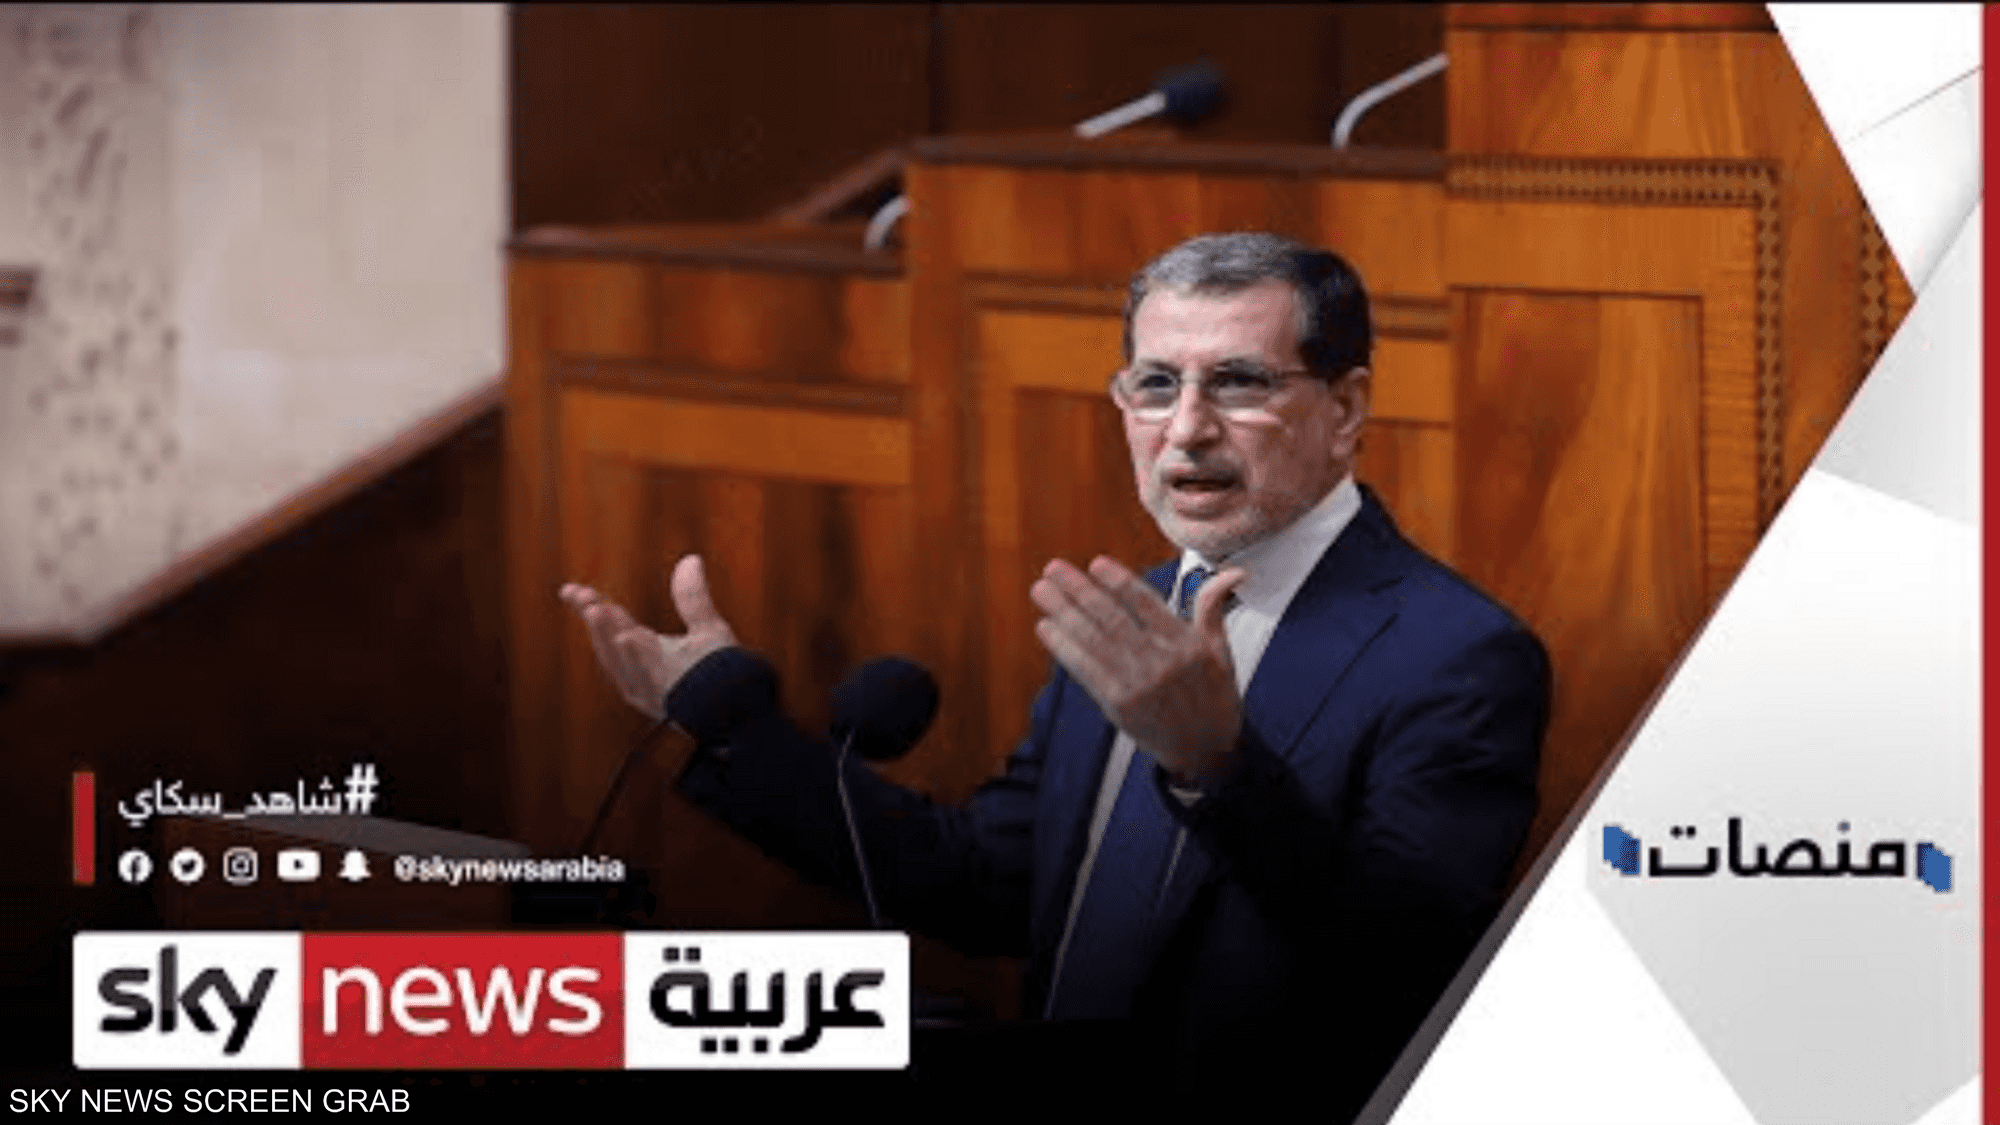 الحكومة المغربية توضح السبب وراء تطبيق الحظر الليلي